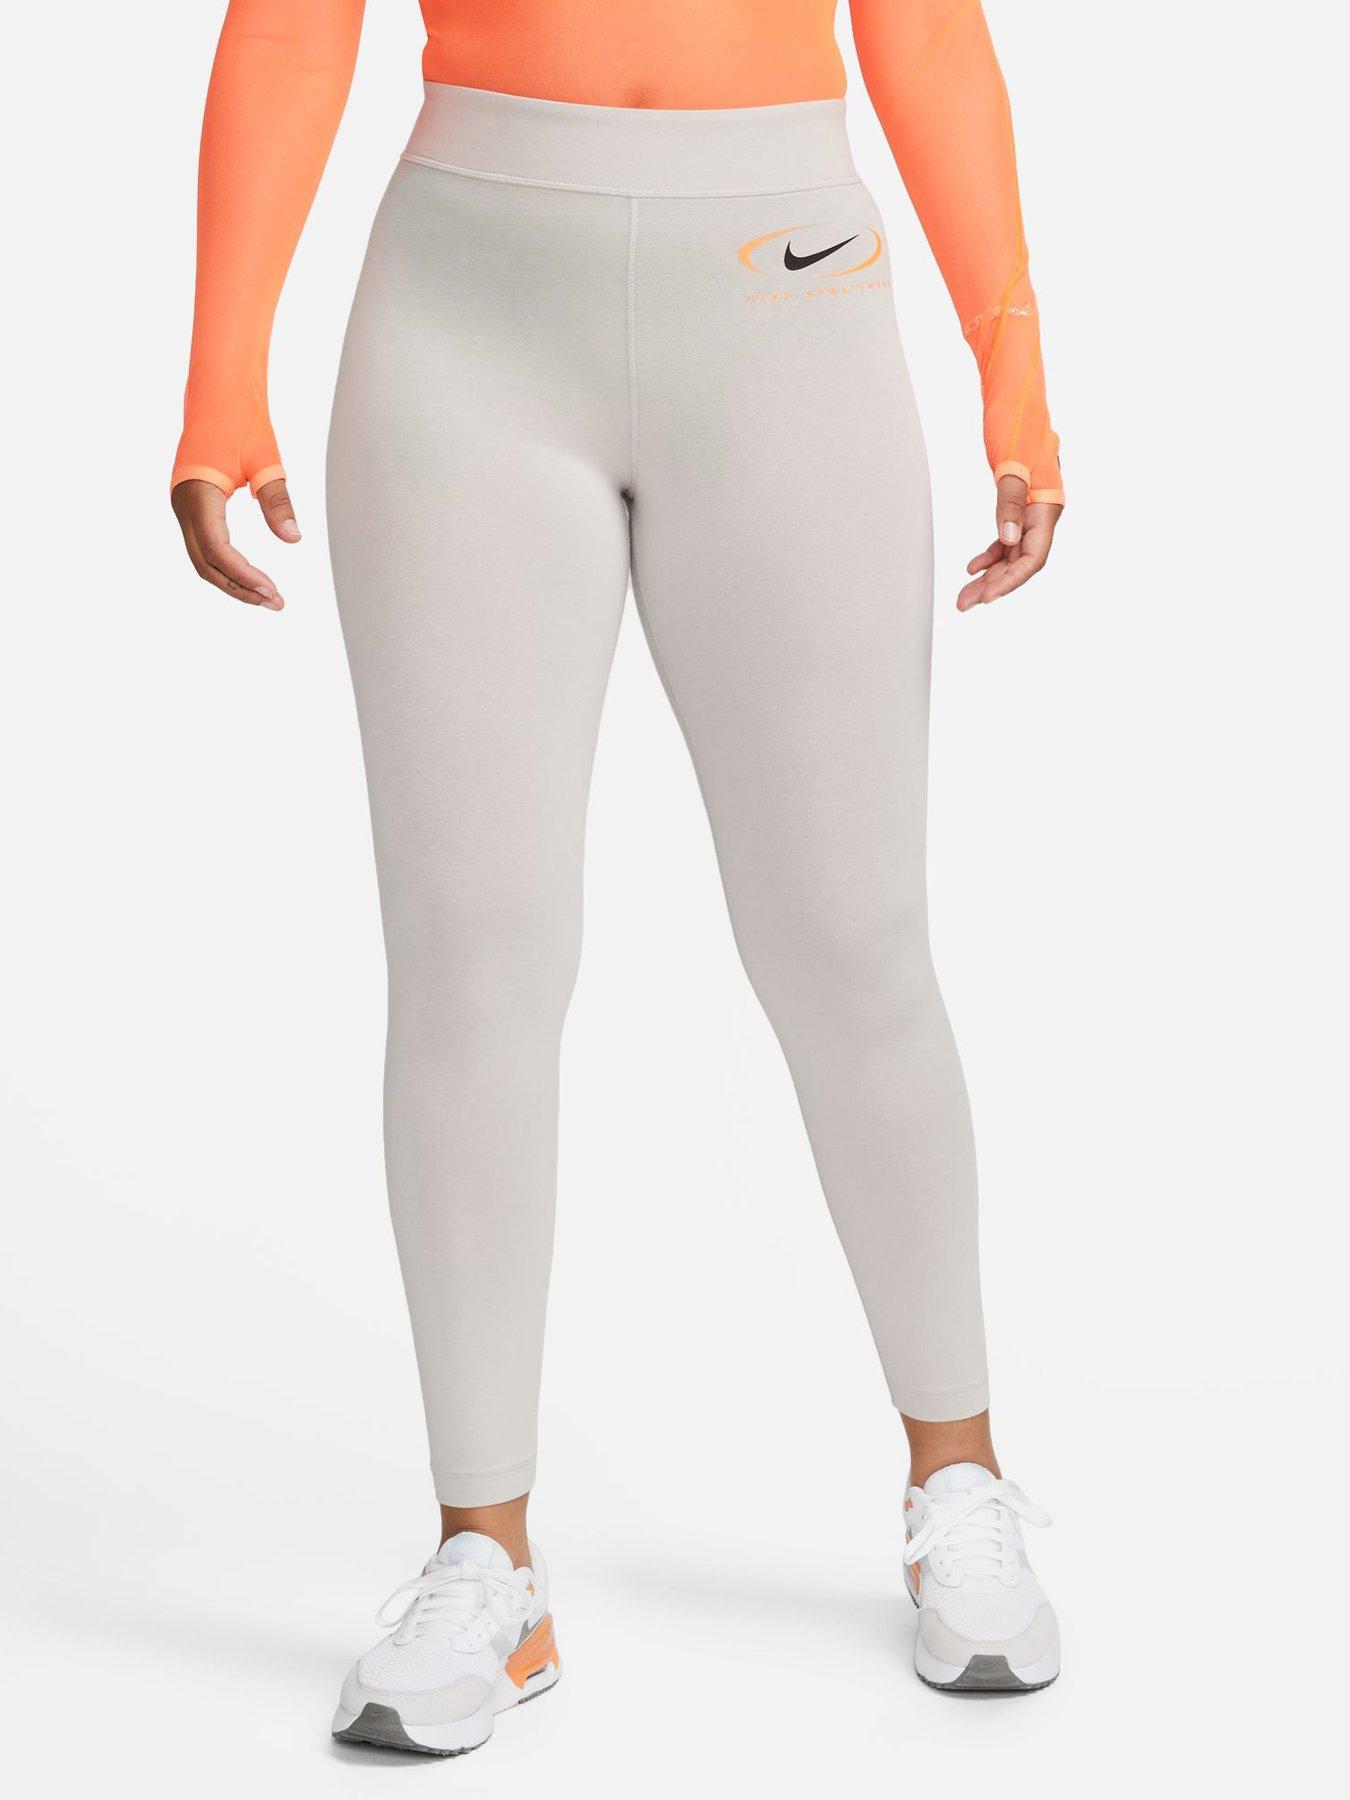 Nike Yoga Dri-FIT Luxe Pants - Black/Multi